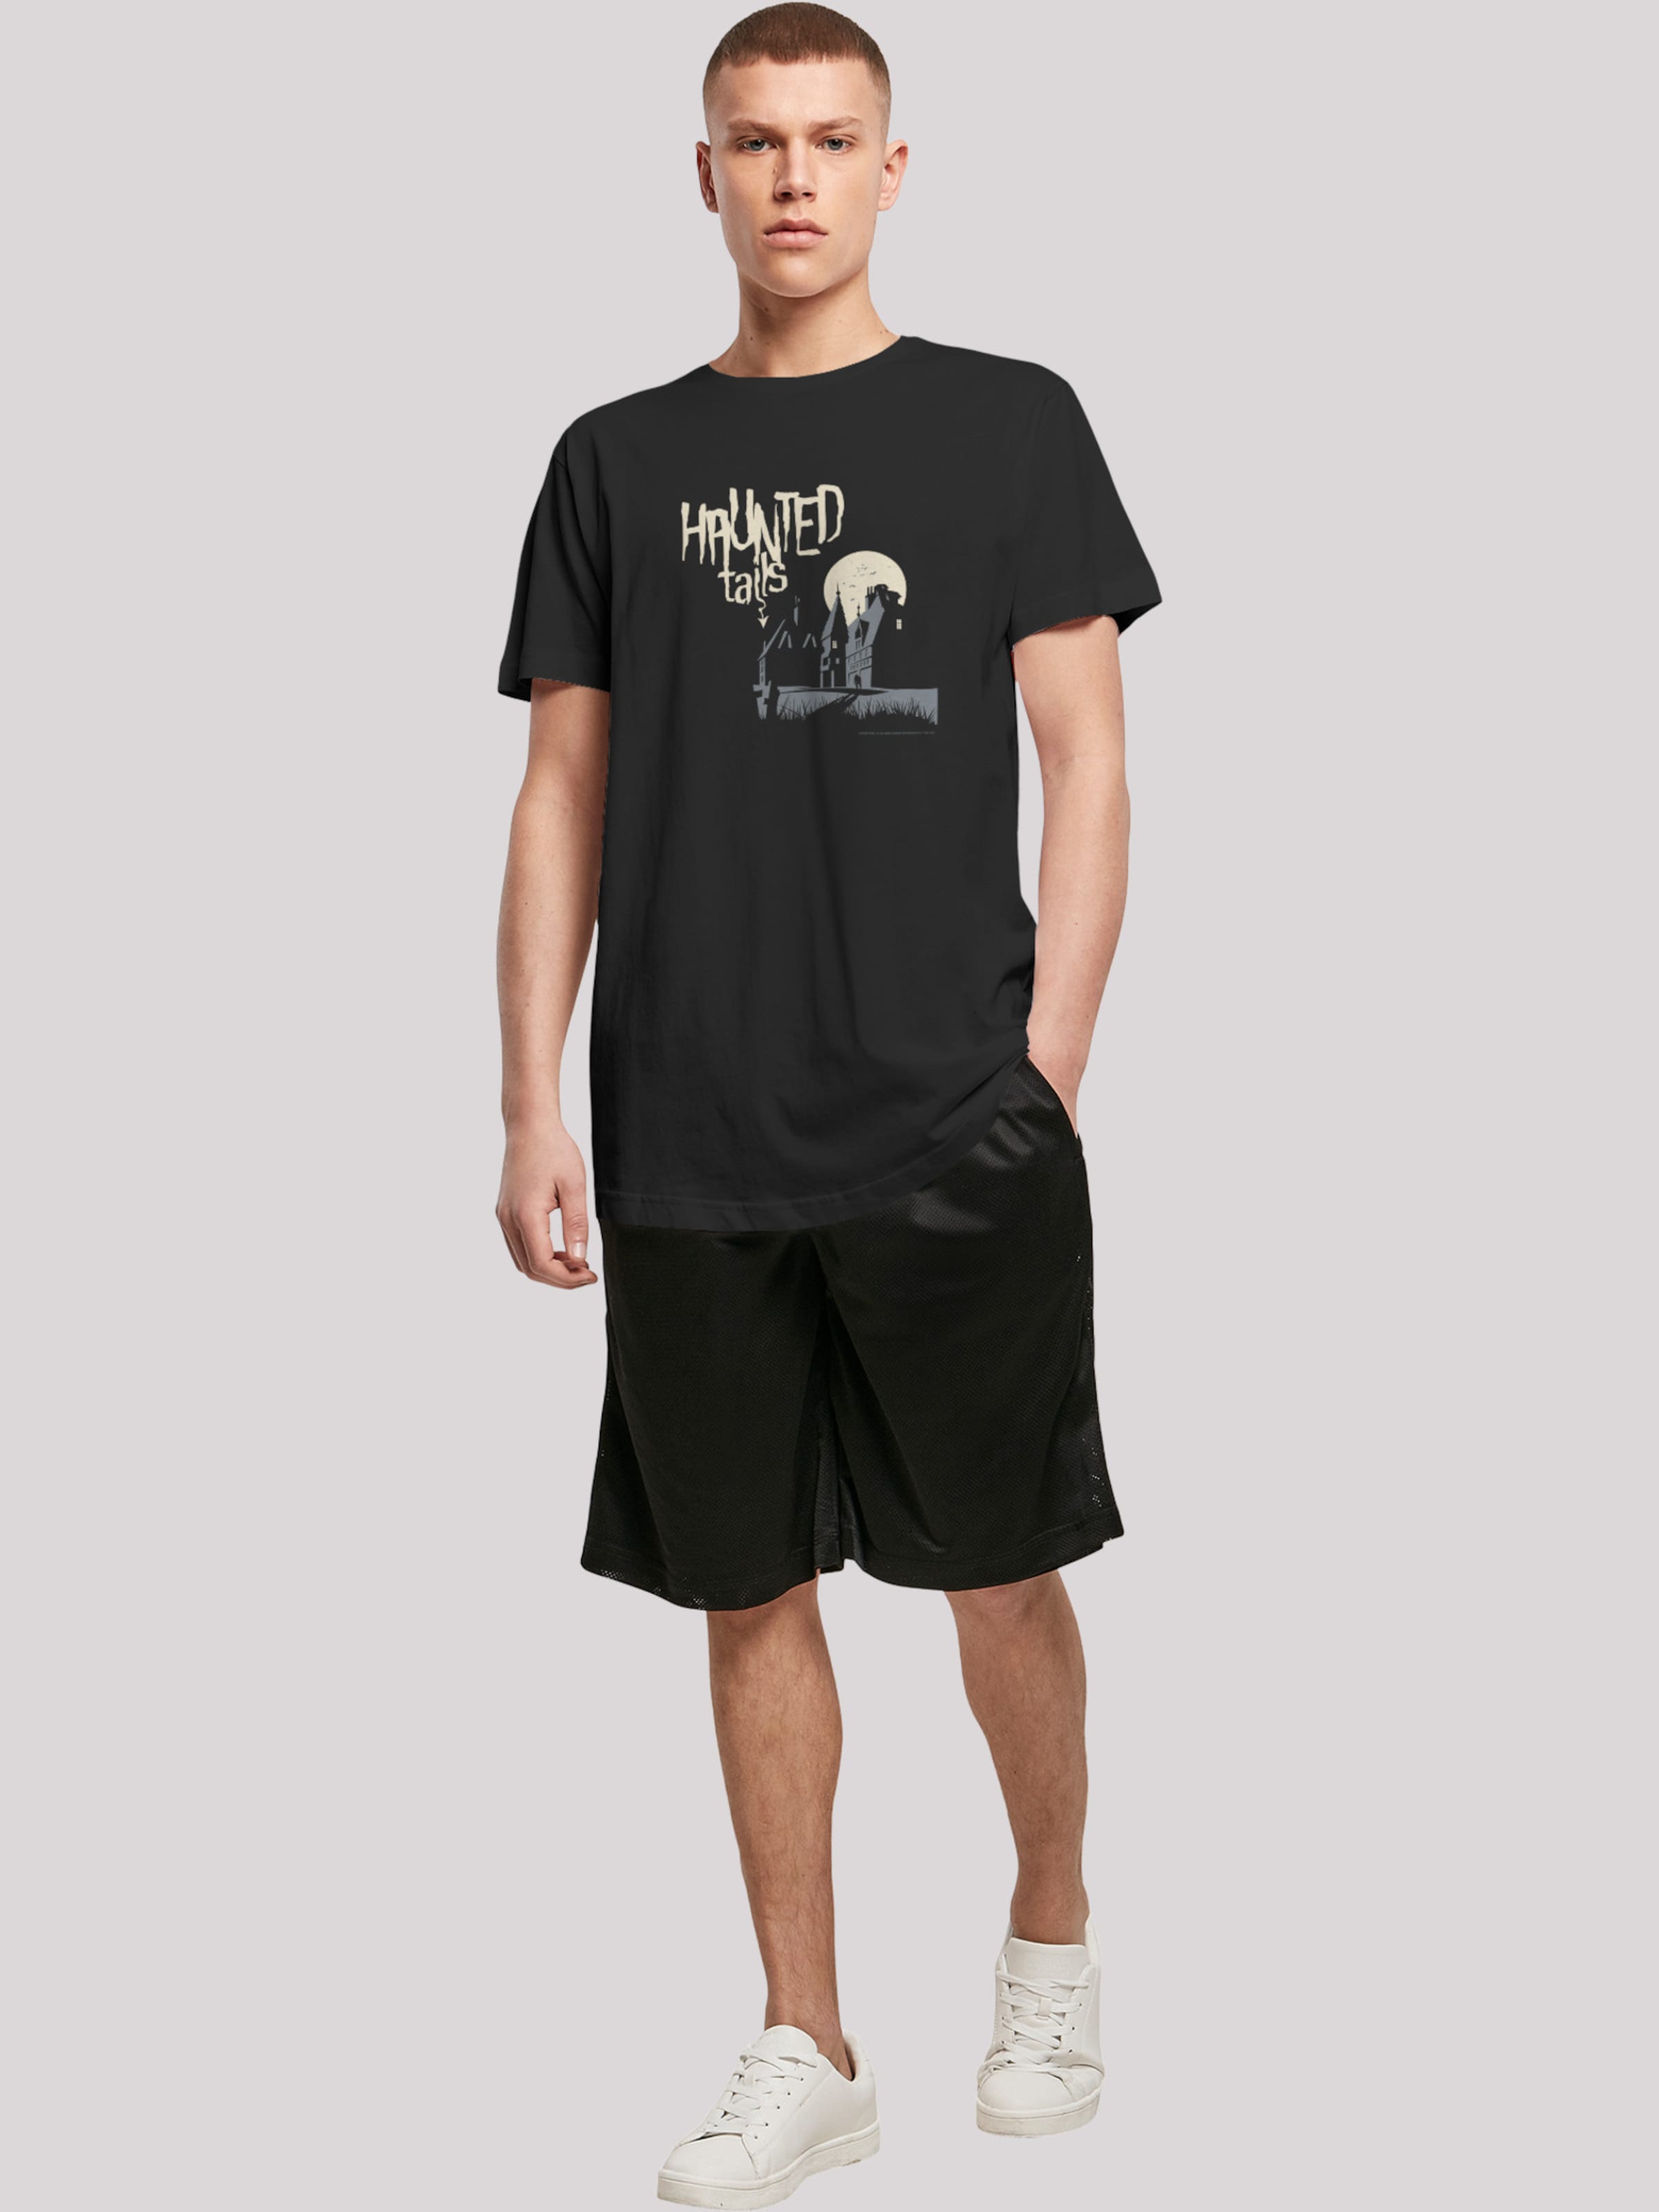 Männer Große Größen F4NT4STIC Shirt in Schwarz - DI51794